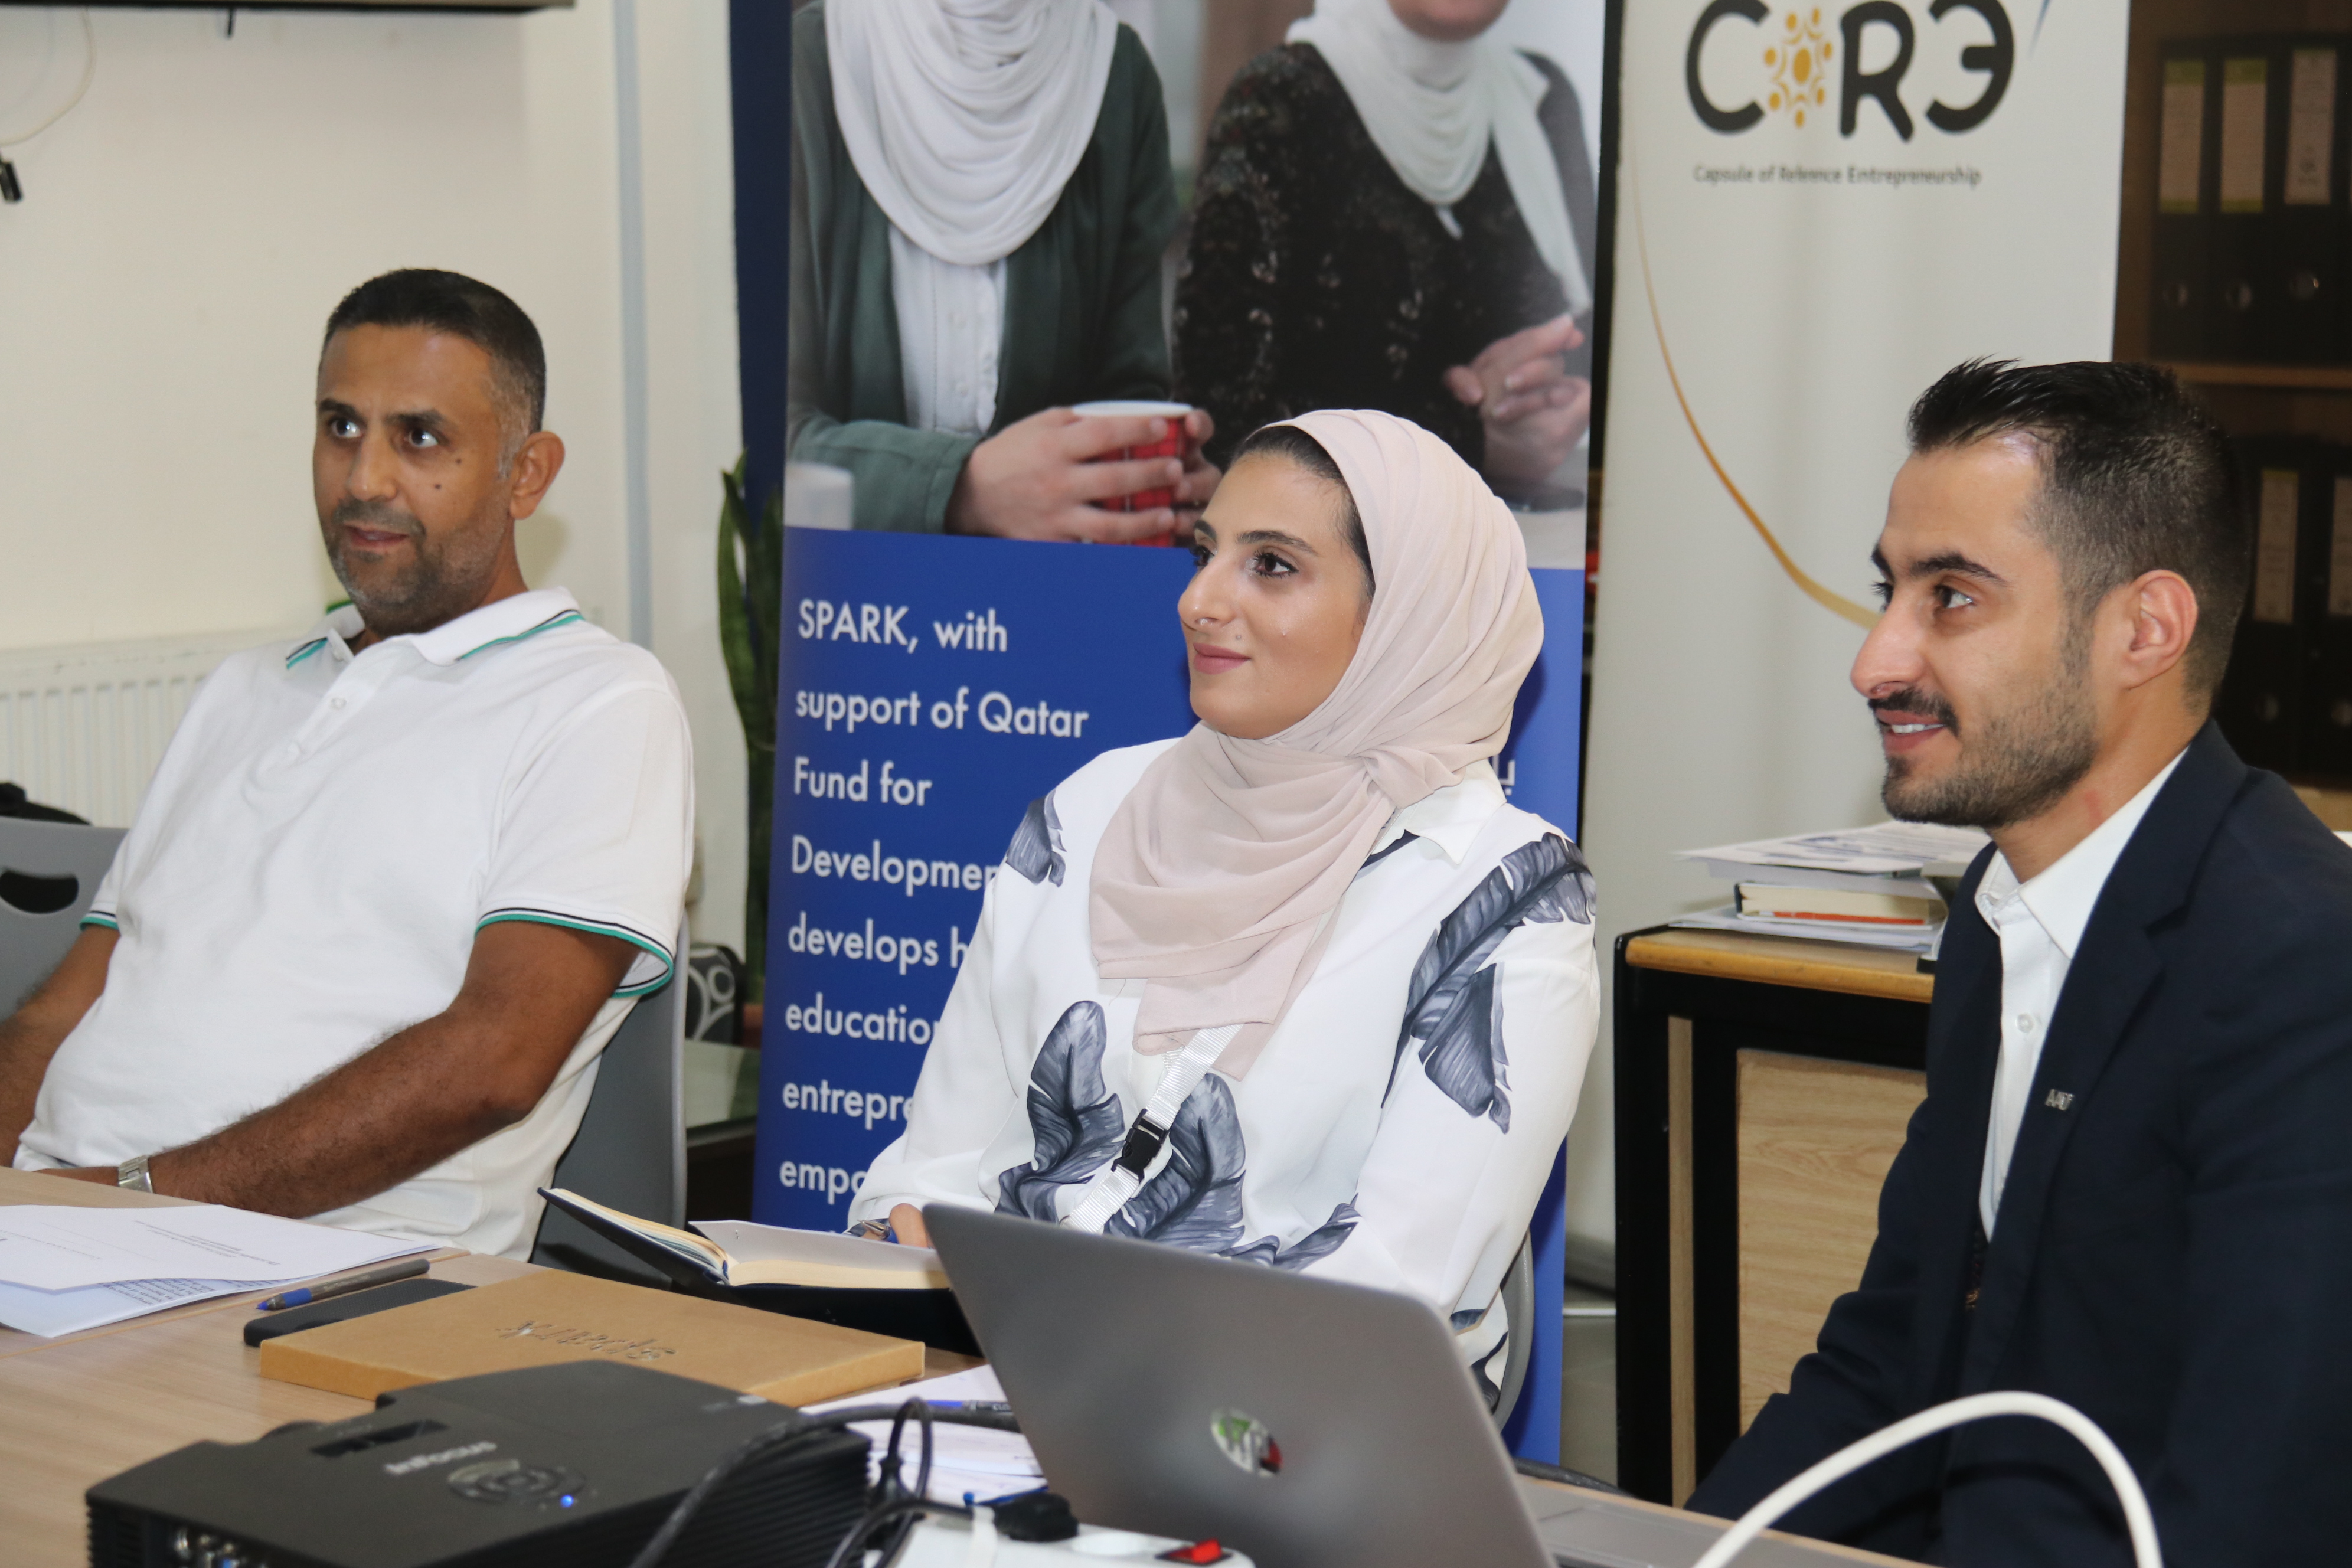 برنامج تدريبي مشترك بين "عمان العربية" ومنظمة سبارك العالمية4